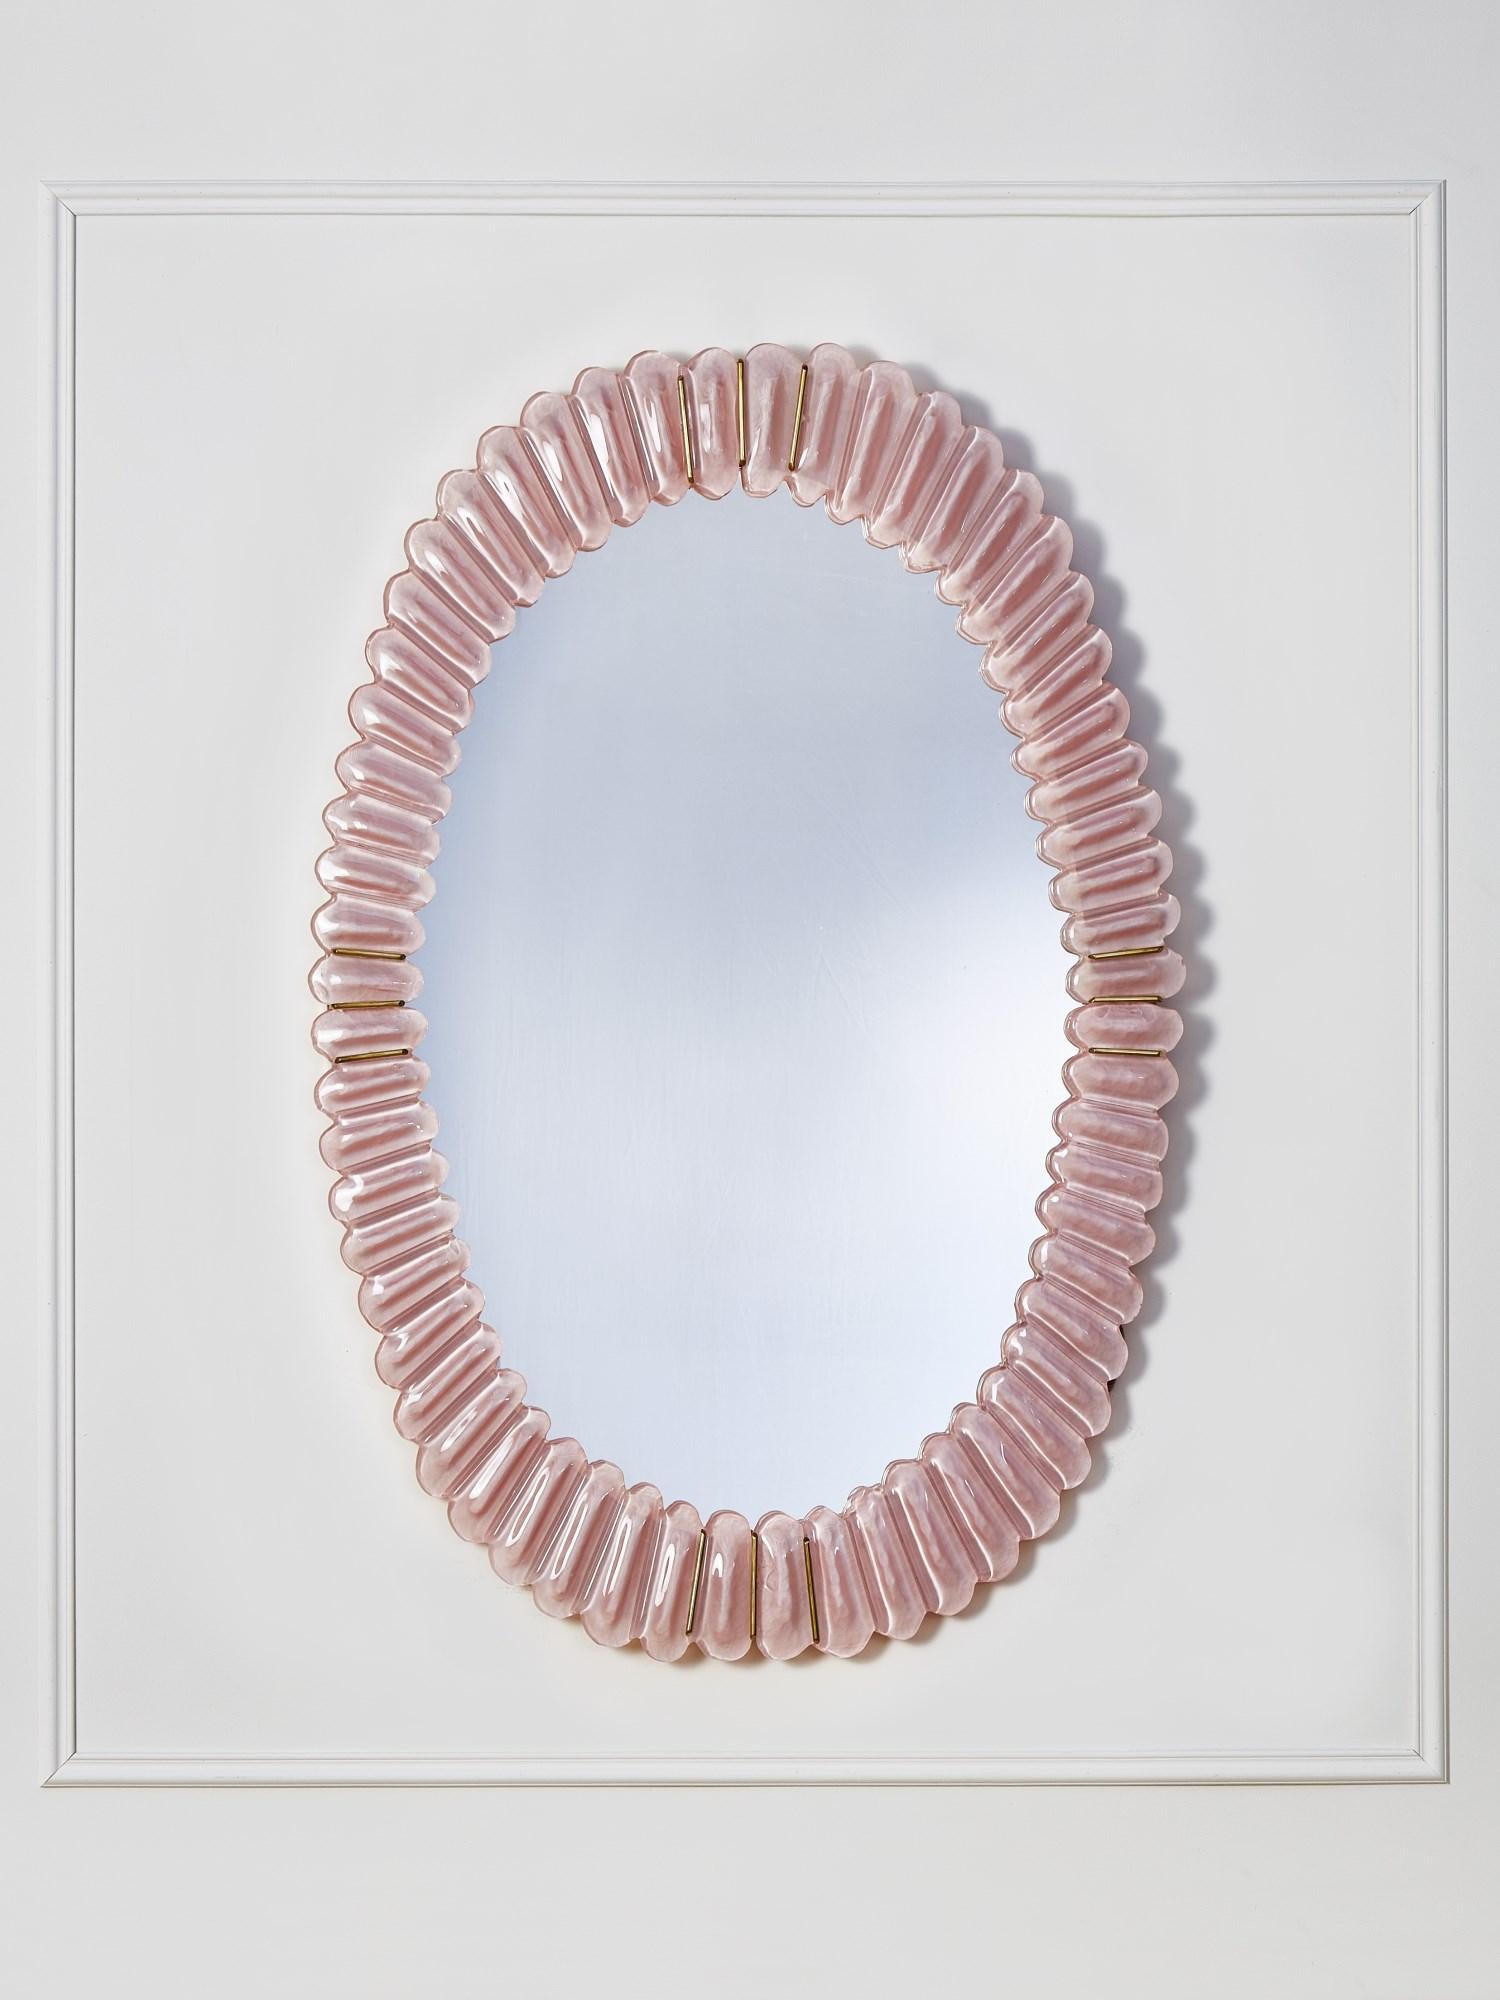 Miroir ovale avec cadre en verre sculpté de Murano et incrustations de laiton.
Création par le Studio Glustin.